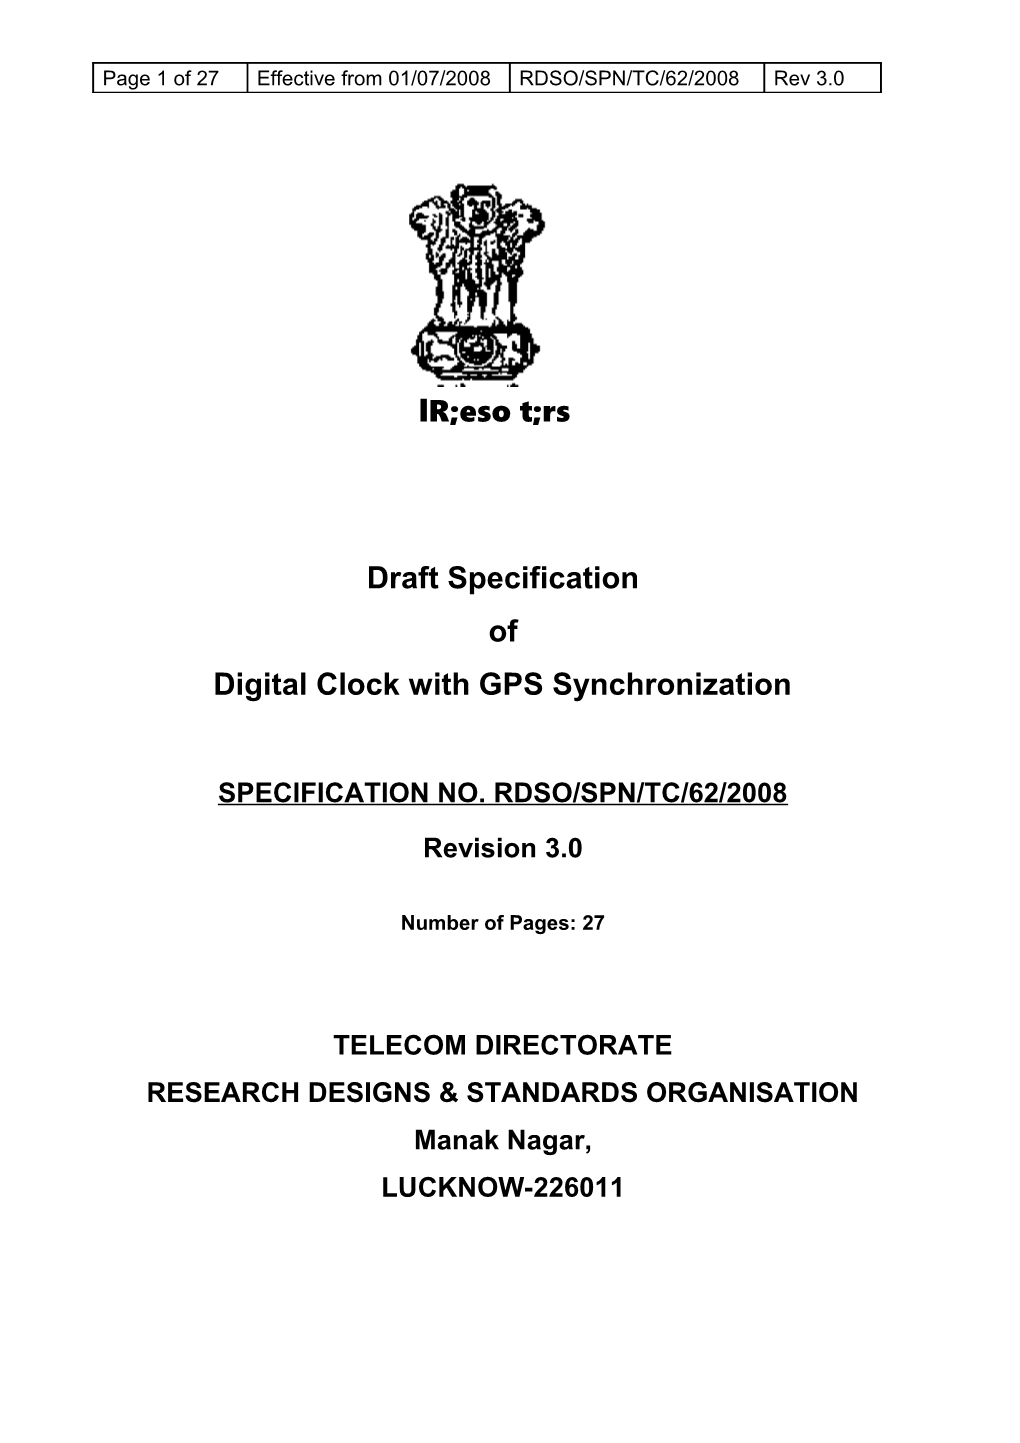 Digital Clock with GPS Synchronization